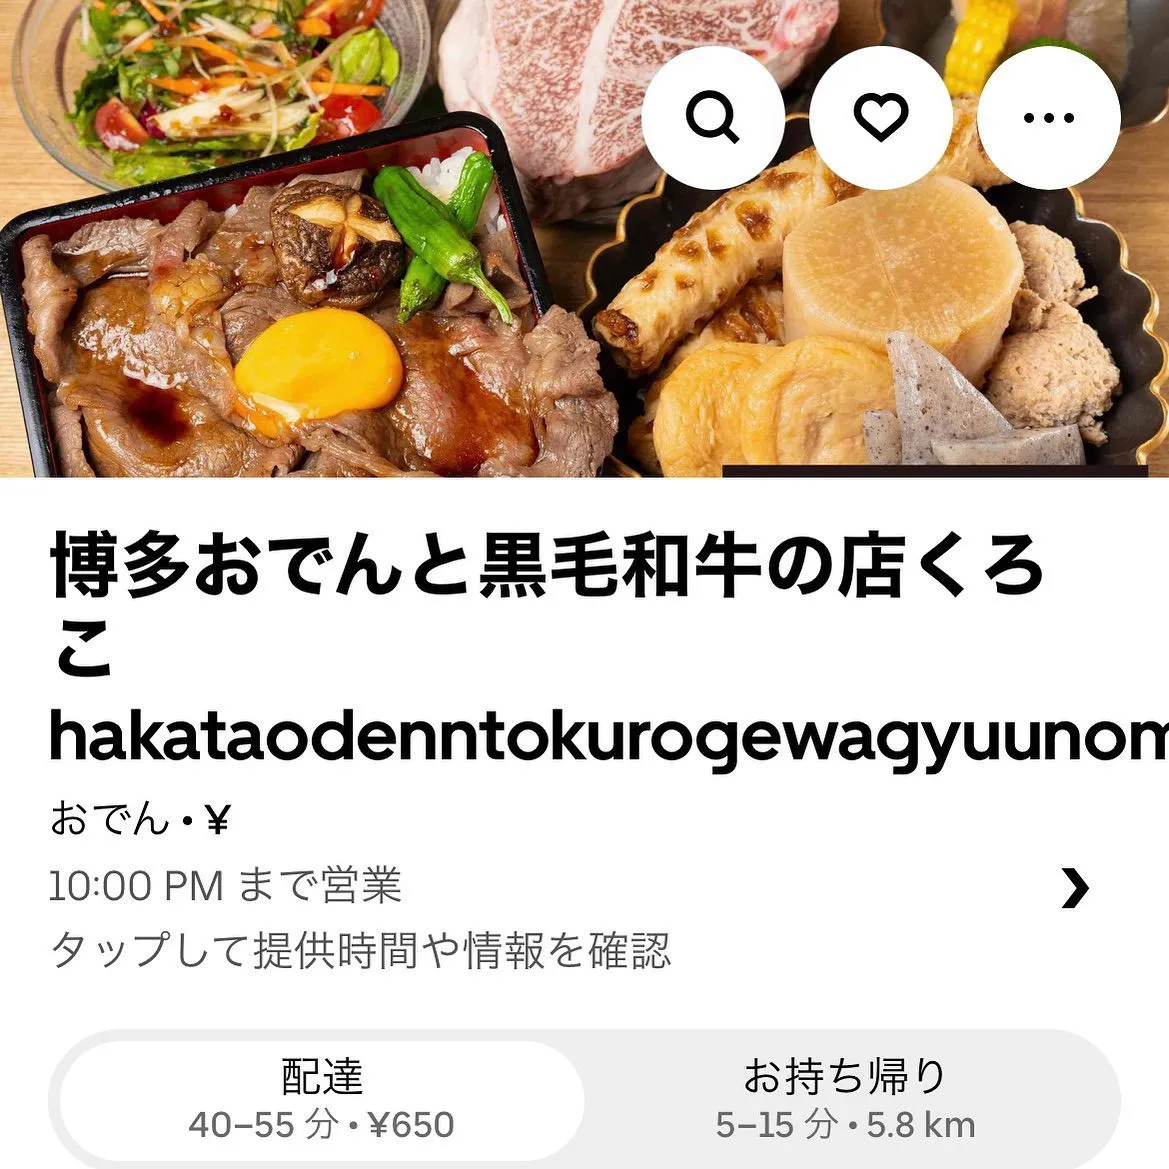 【経堂駅チカ】オシャレ居酒屋🏮ランチでお得に美味しいお肉いか...